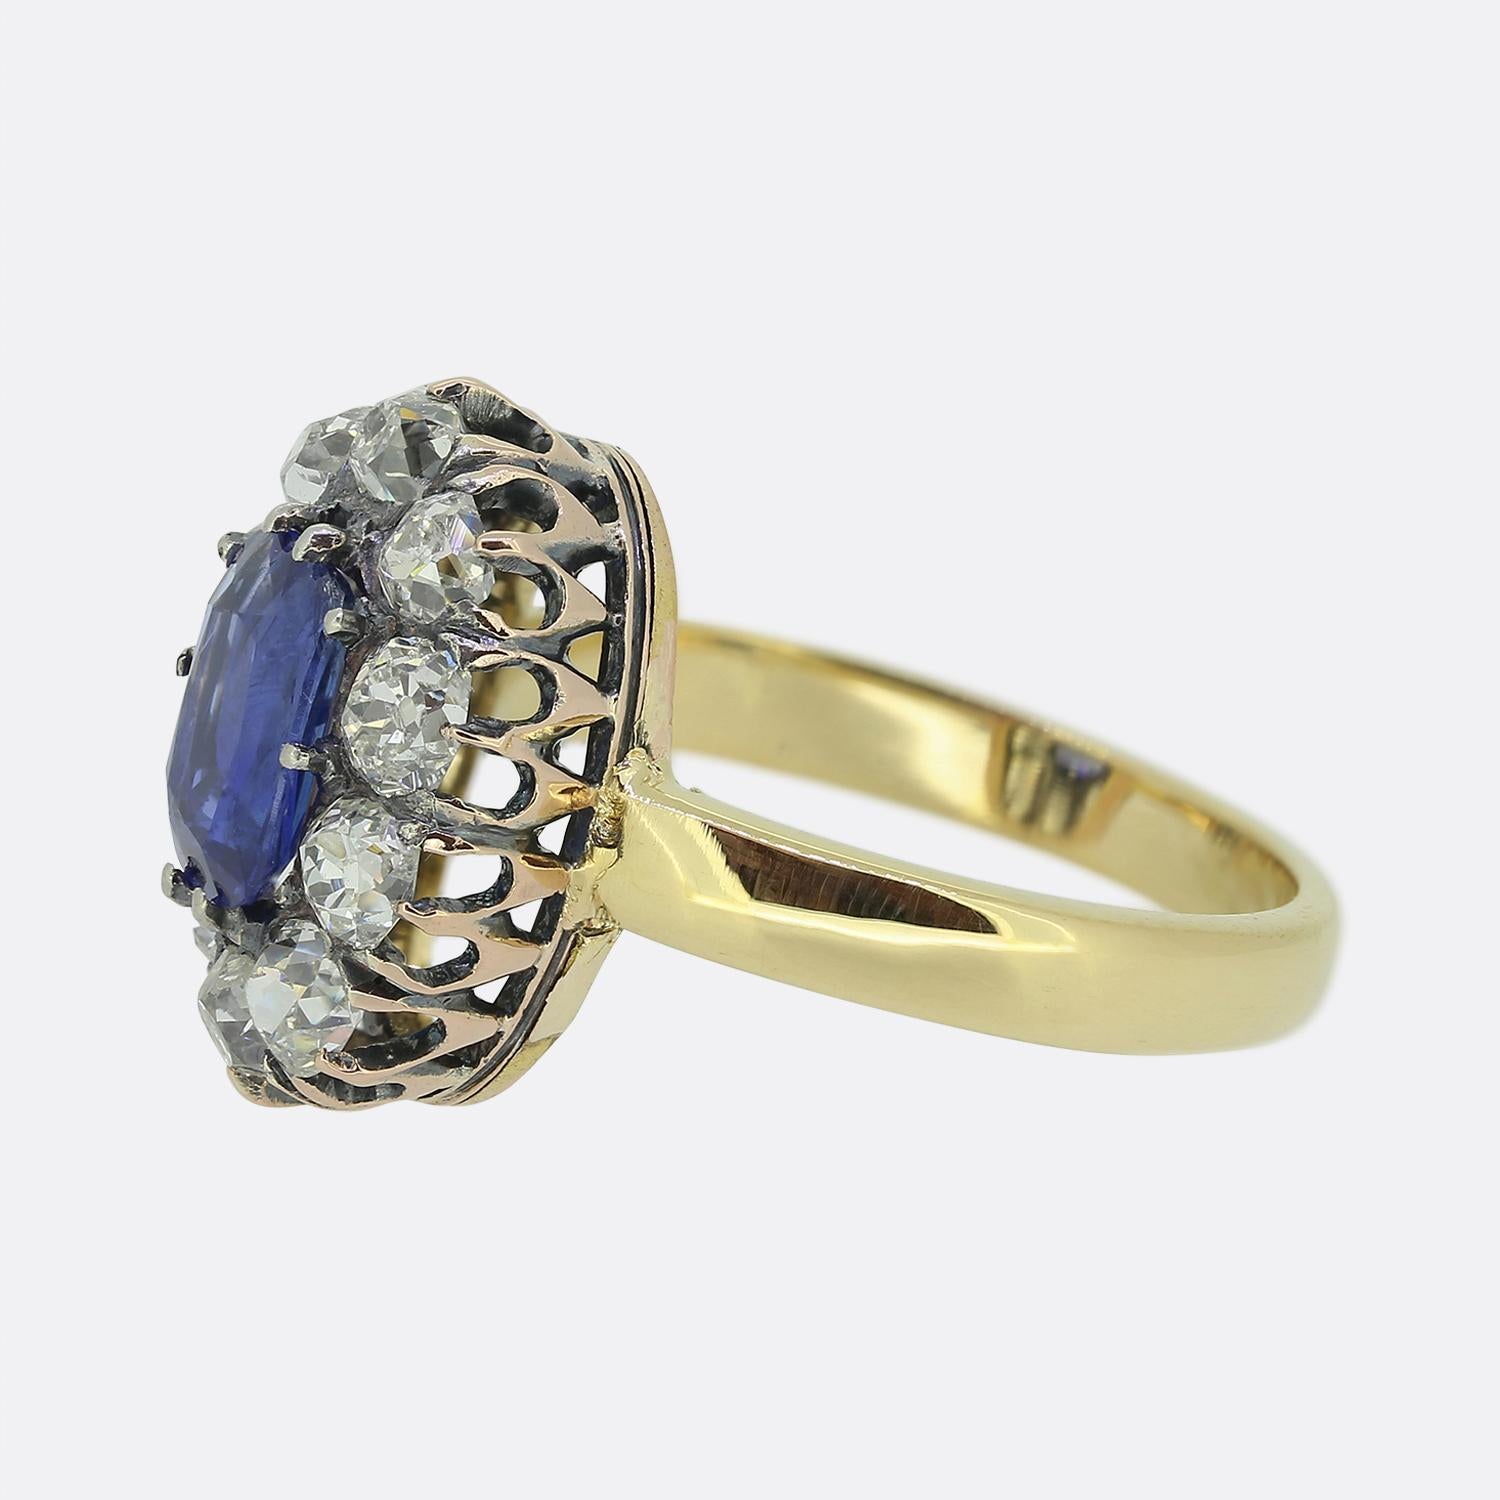 Hier haben wir einen atemberaubenden Saphir- und Diamant-Cluster-Ring. Dieses antike Stück zeigt einen einzelnen ovalen, kissenförmig geschliffenen, natürlichen, unerhitzten Saphir in der Mitte der Vorderseite, der einen leuchtend kornblumenblauen